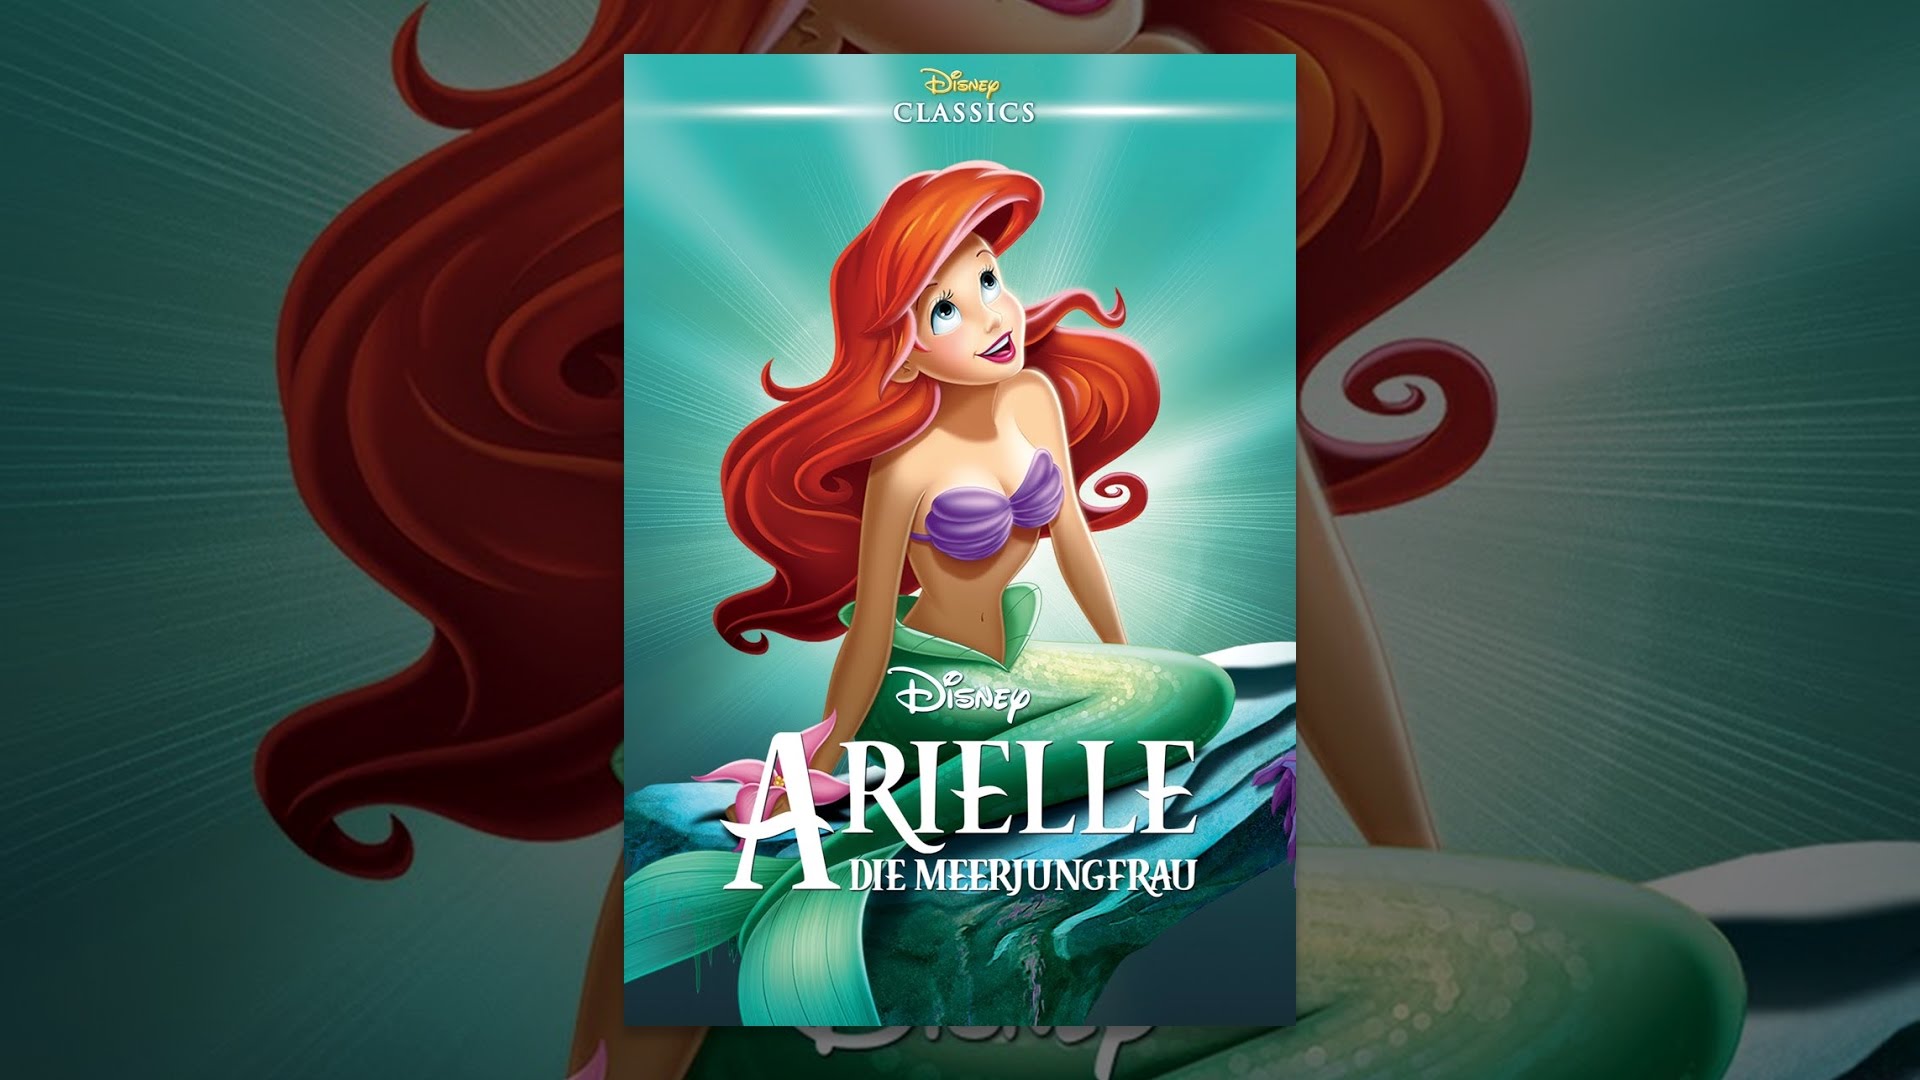 DISNEY LIEBLINGE Arielle, die Meerjungfrau   Disney Deutschland ...